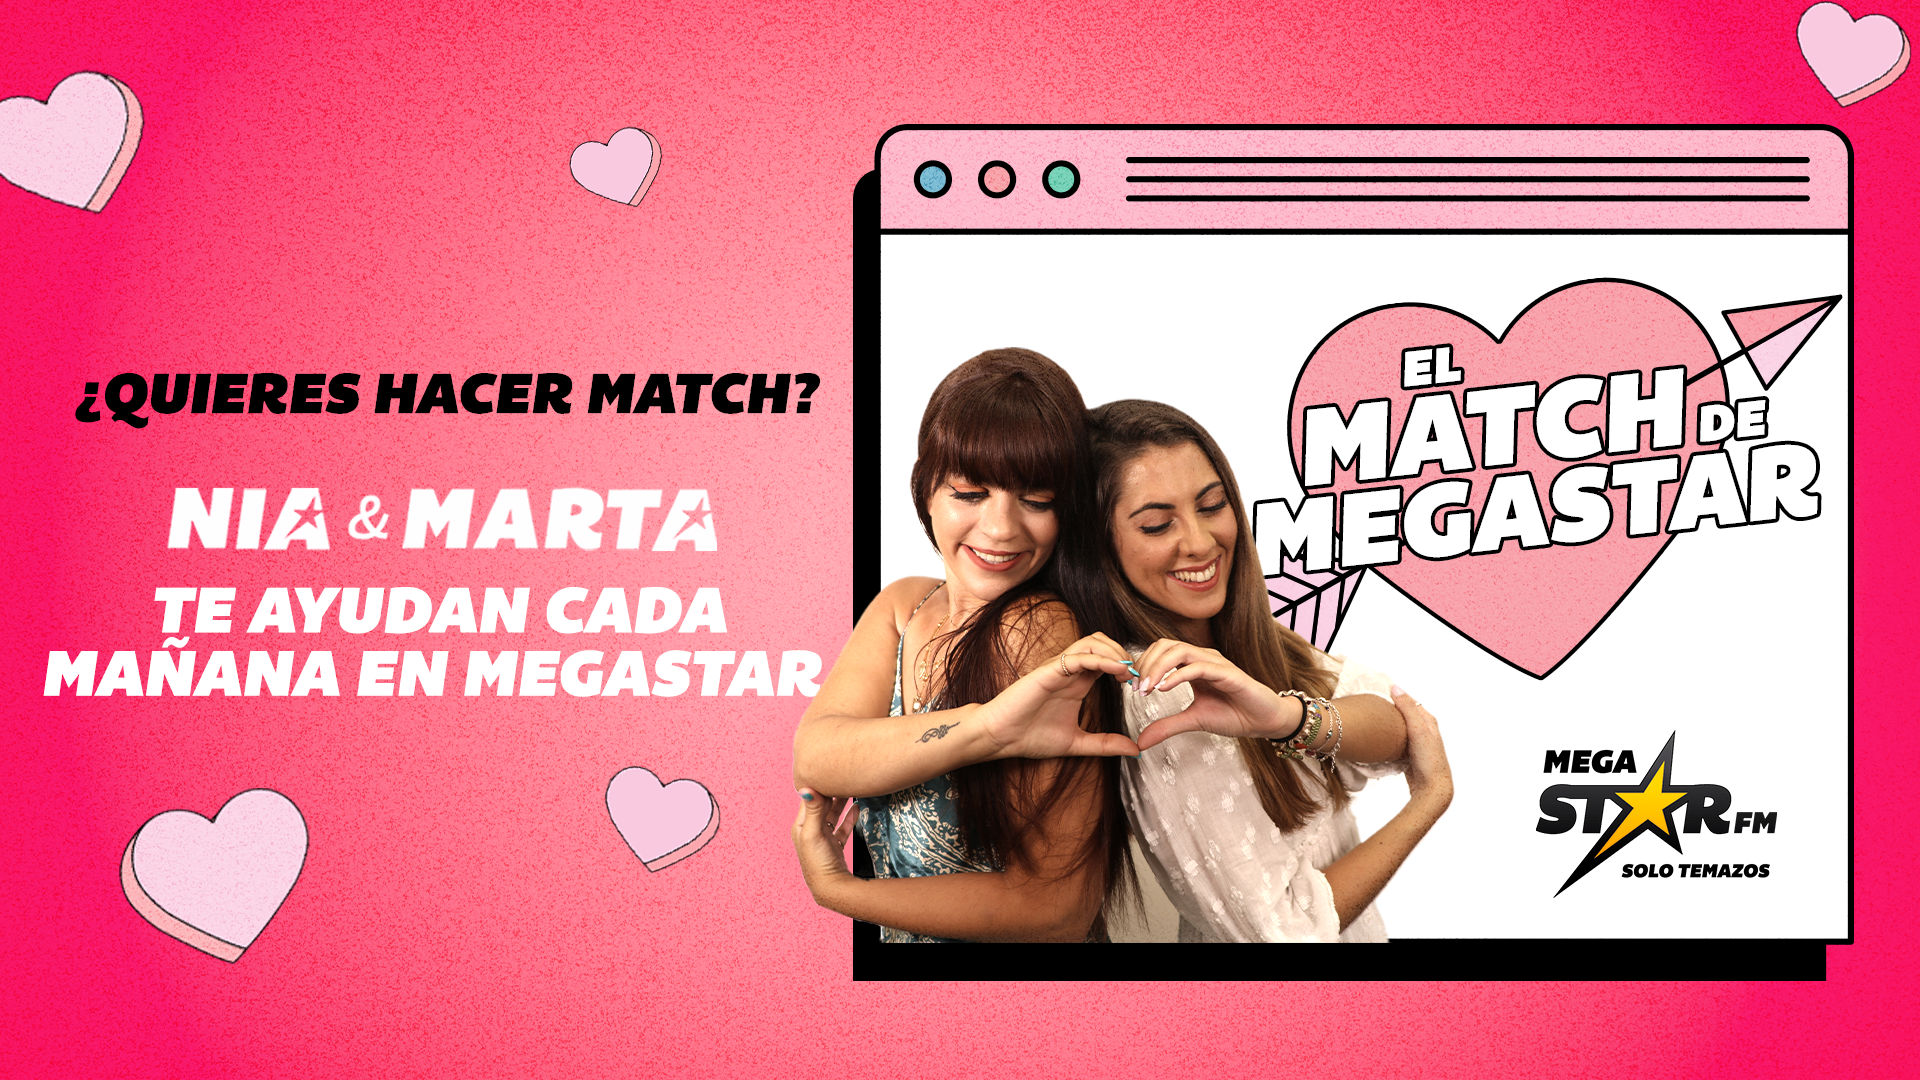 Los candidatos del 'Match de MegaStar' son dos auténticos Potterhead: ¿habrán sido compatibles?